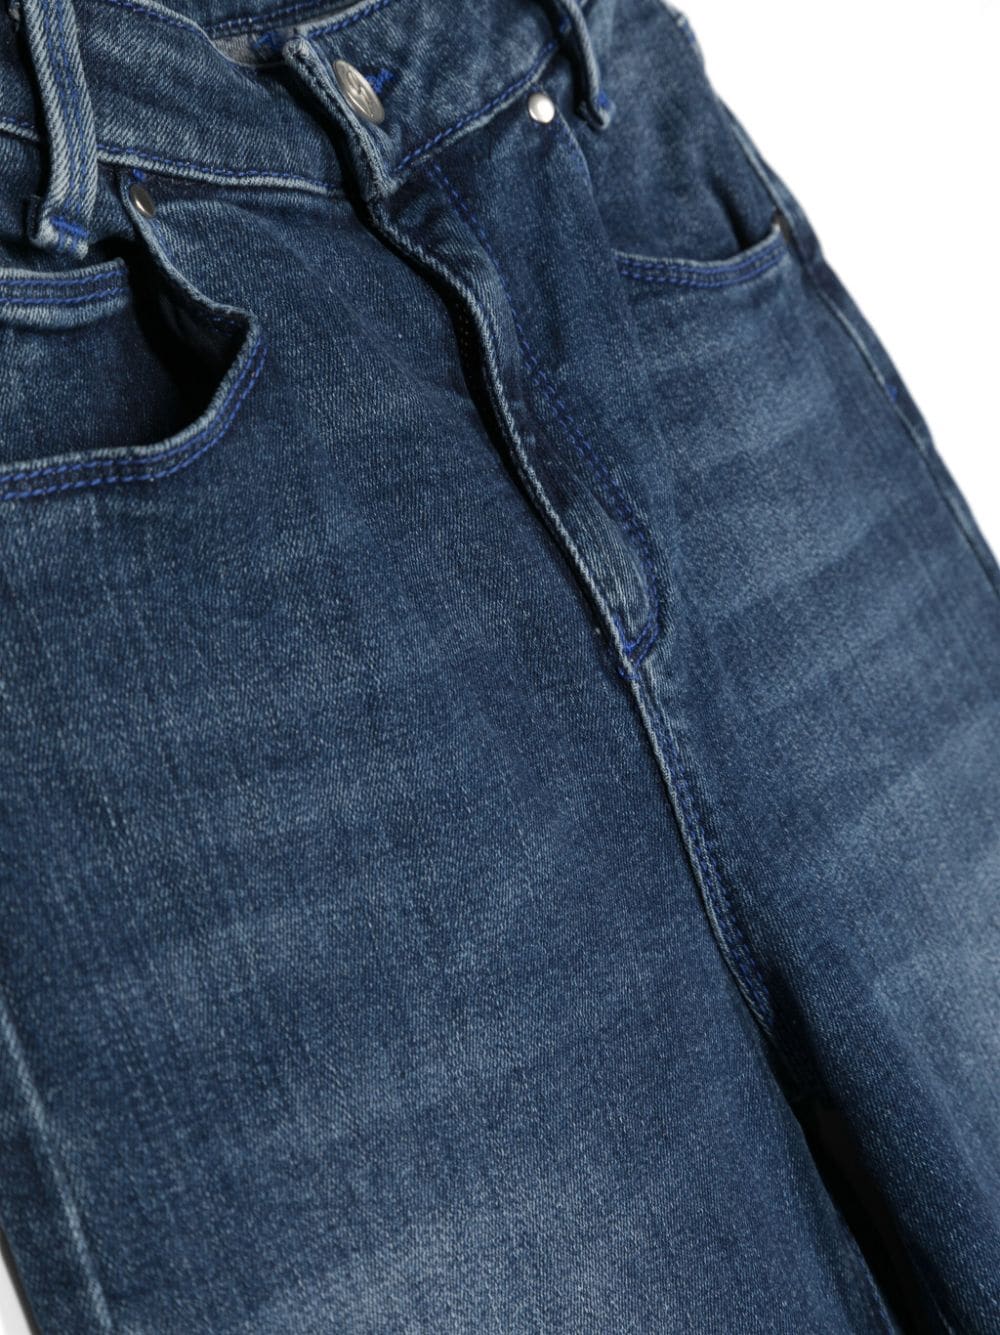 Pantalon en jeans bleu pour fille avec logo